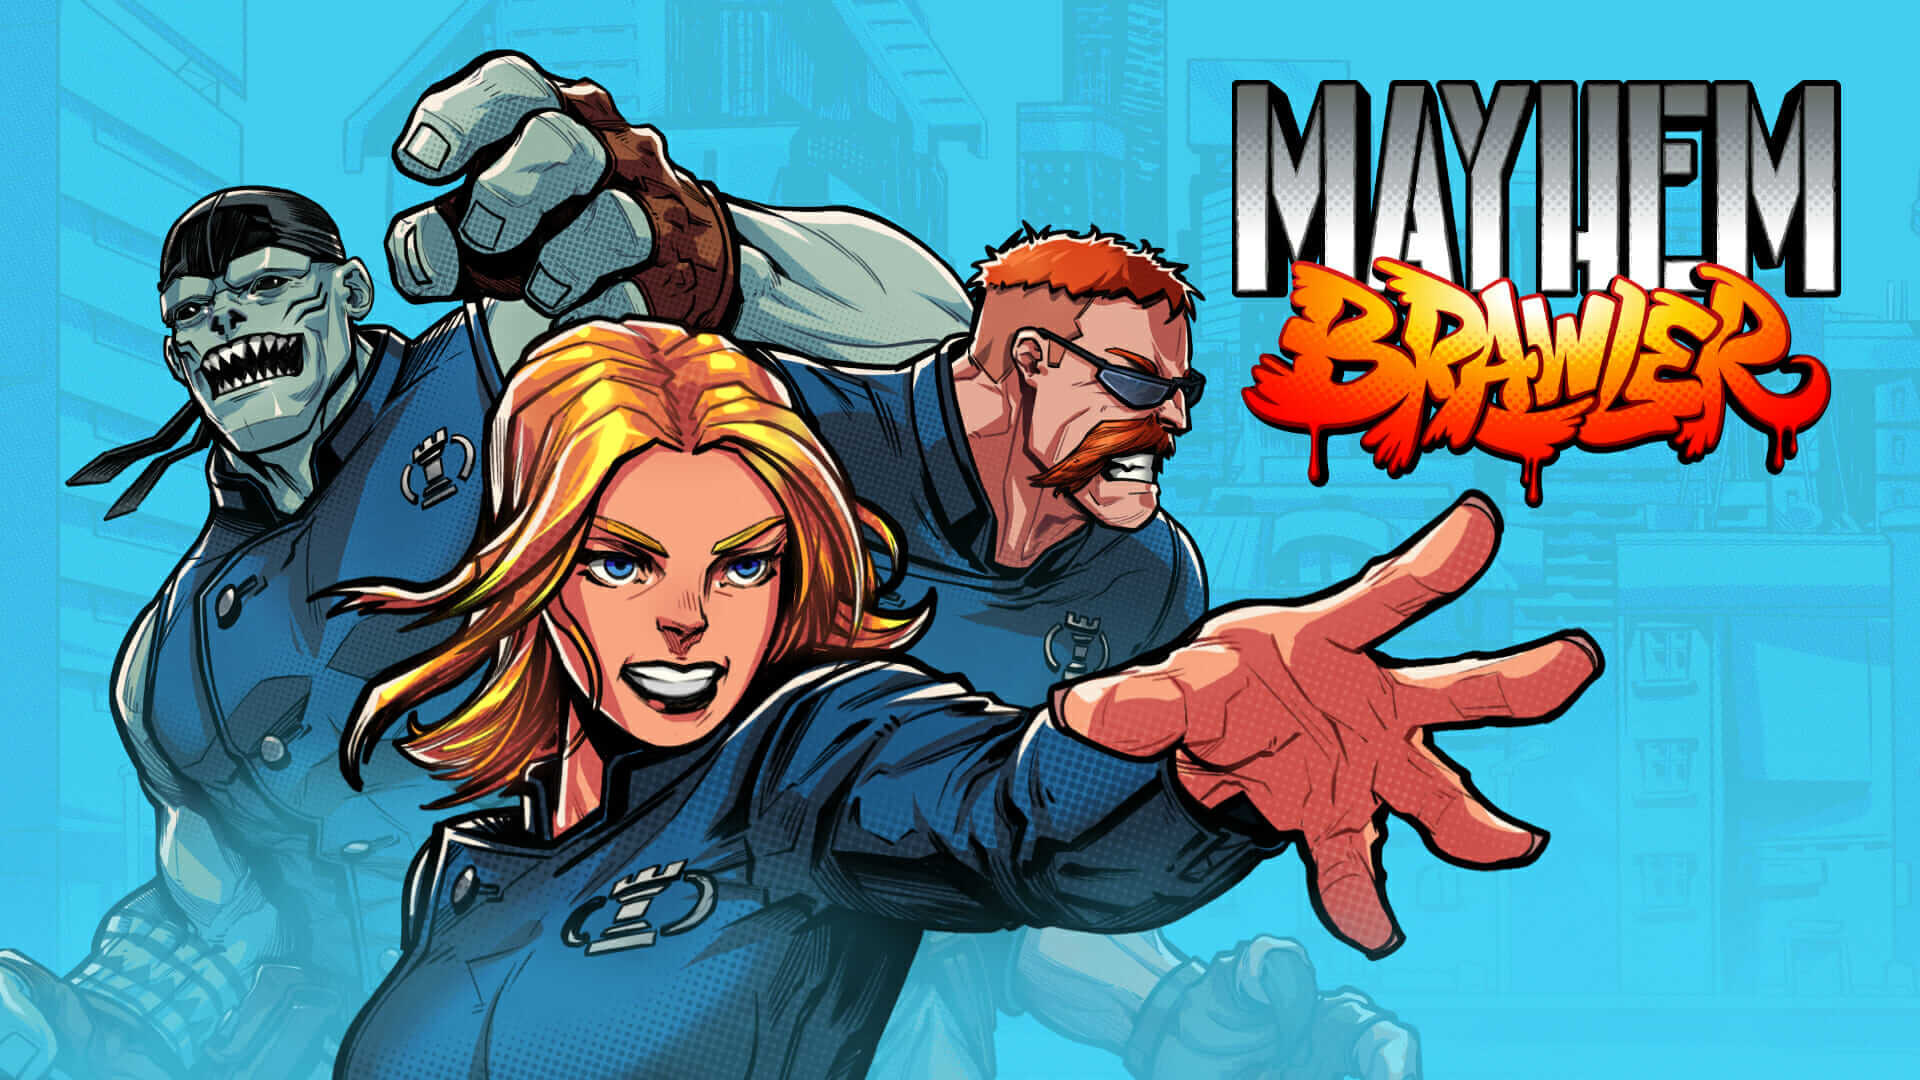 Mayhem Brawler/ Отряд на дежурстве / Прохождение #3 Финал первой сюжетной линии.